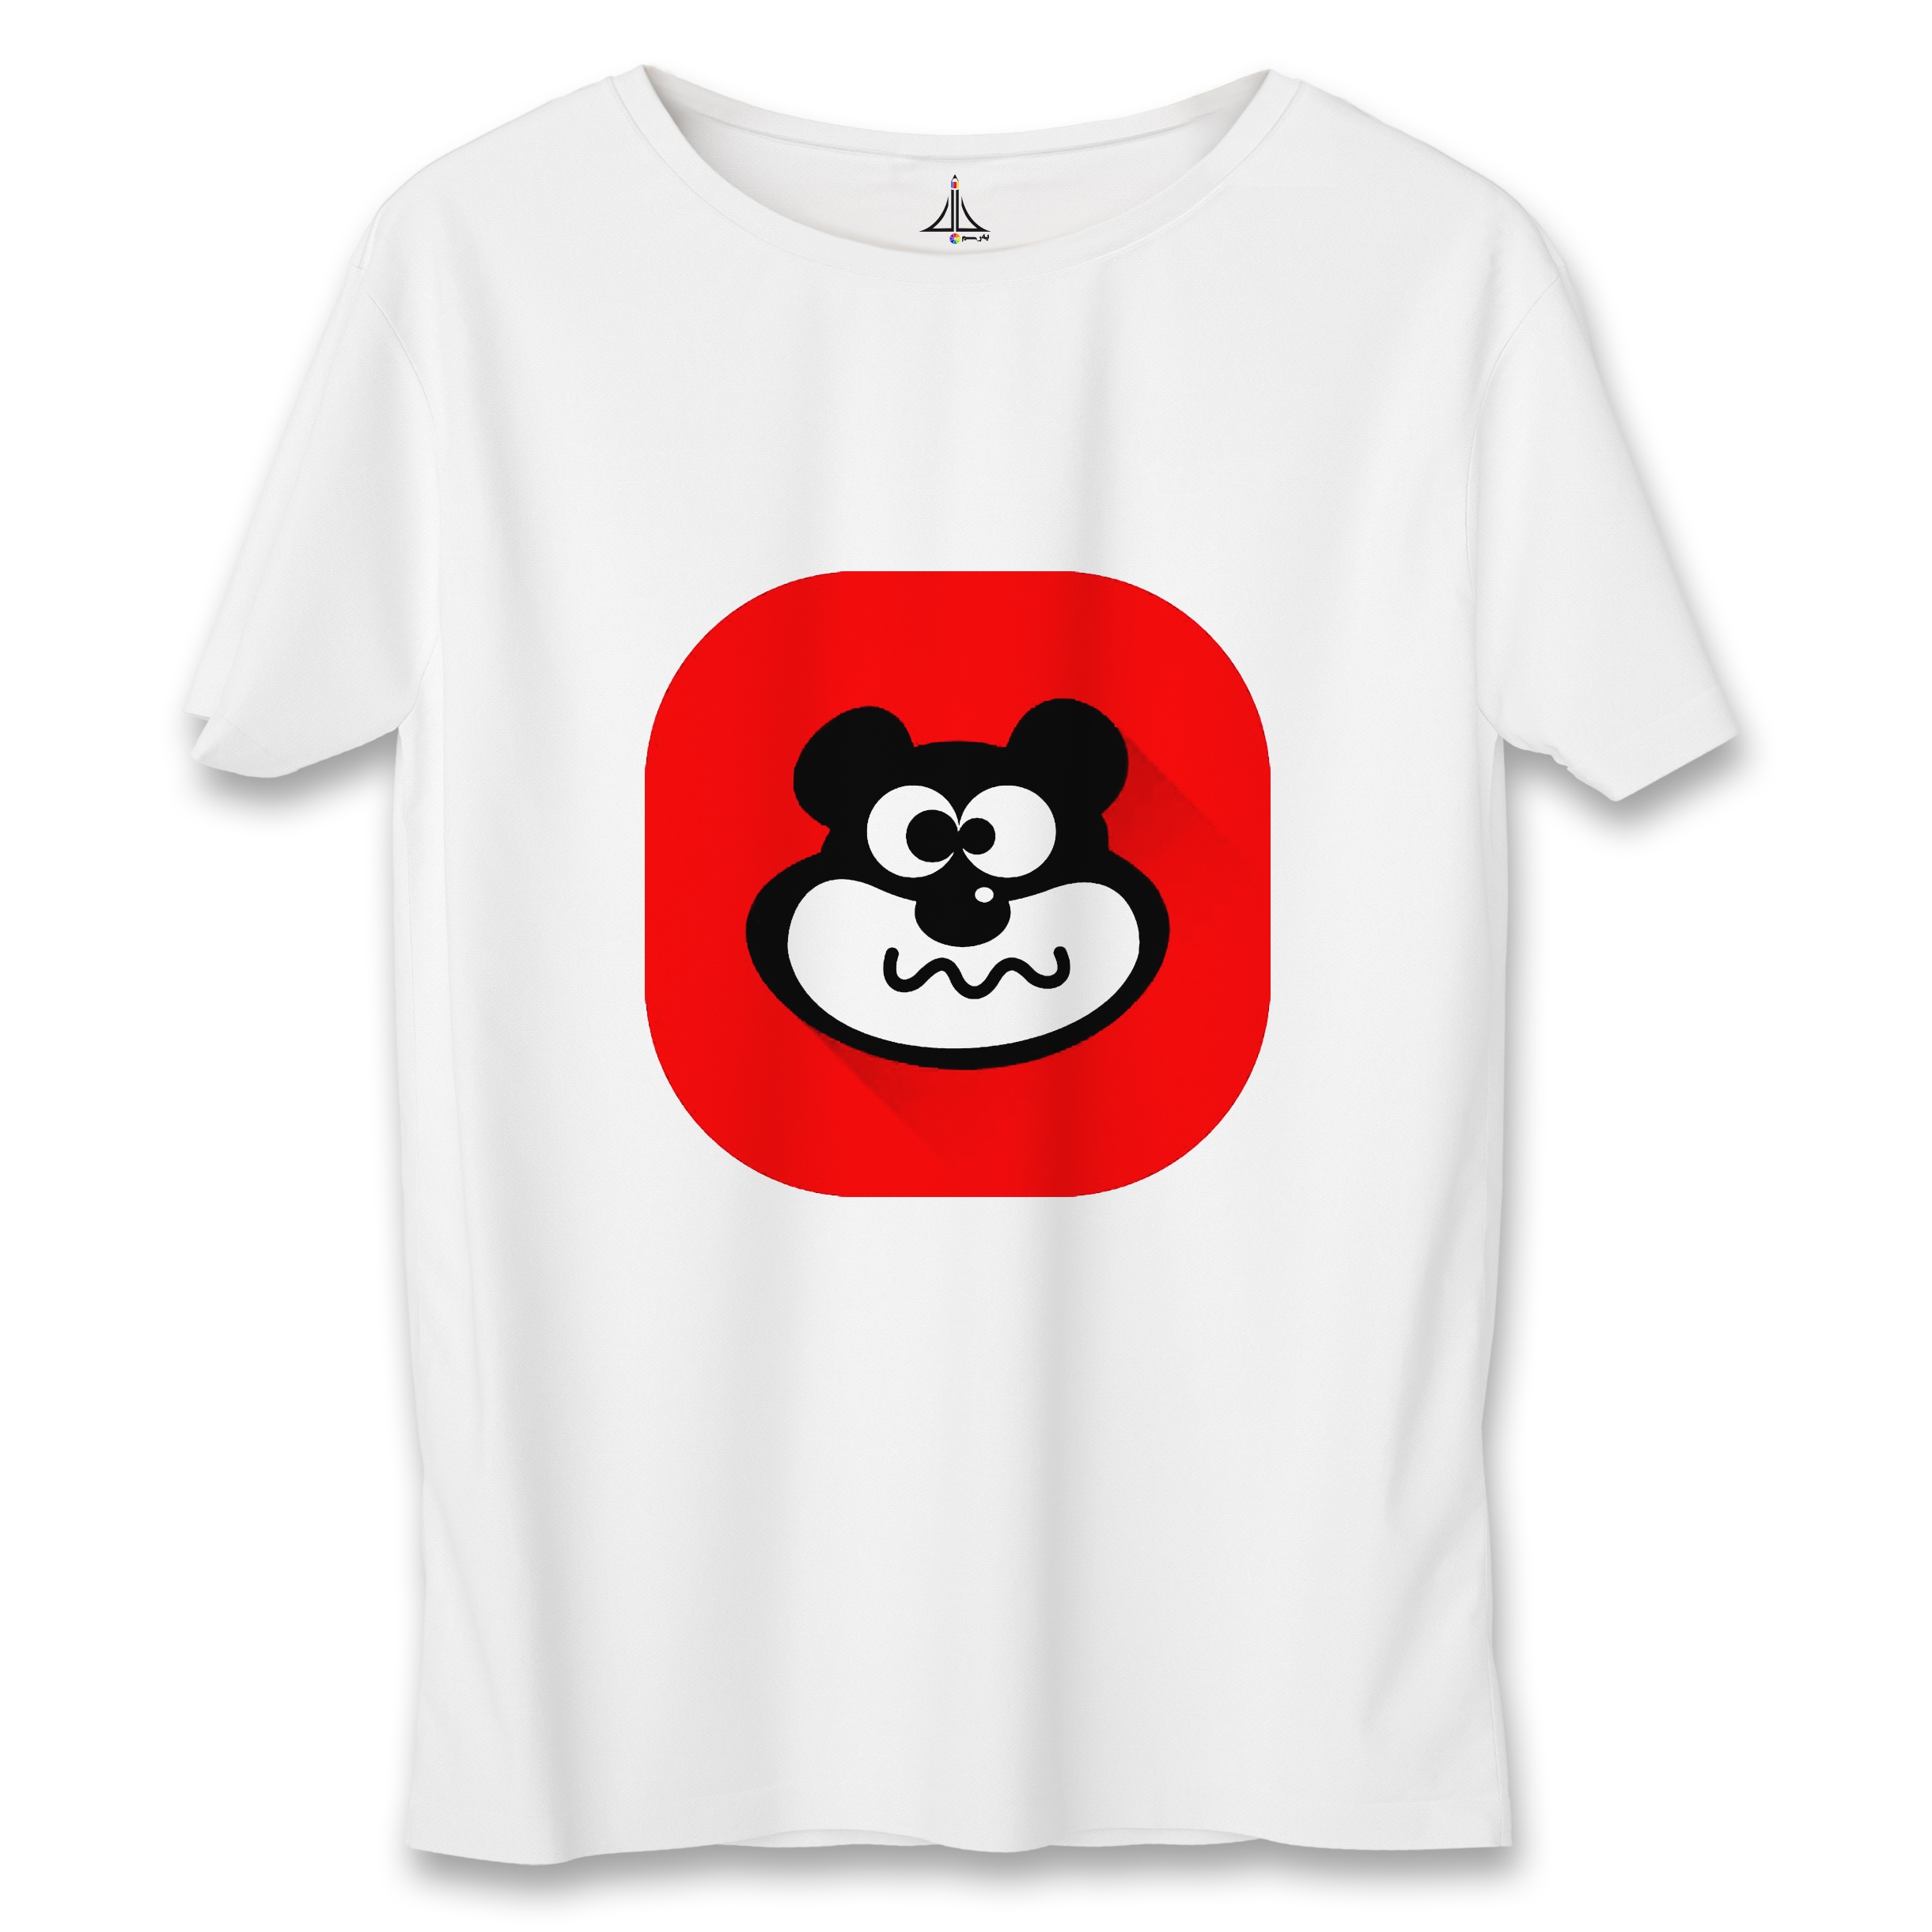 تی شرت زنانه به رسم طرح خرس کد 5564